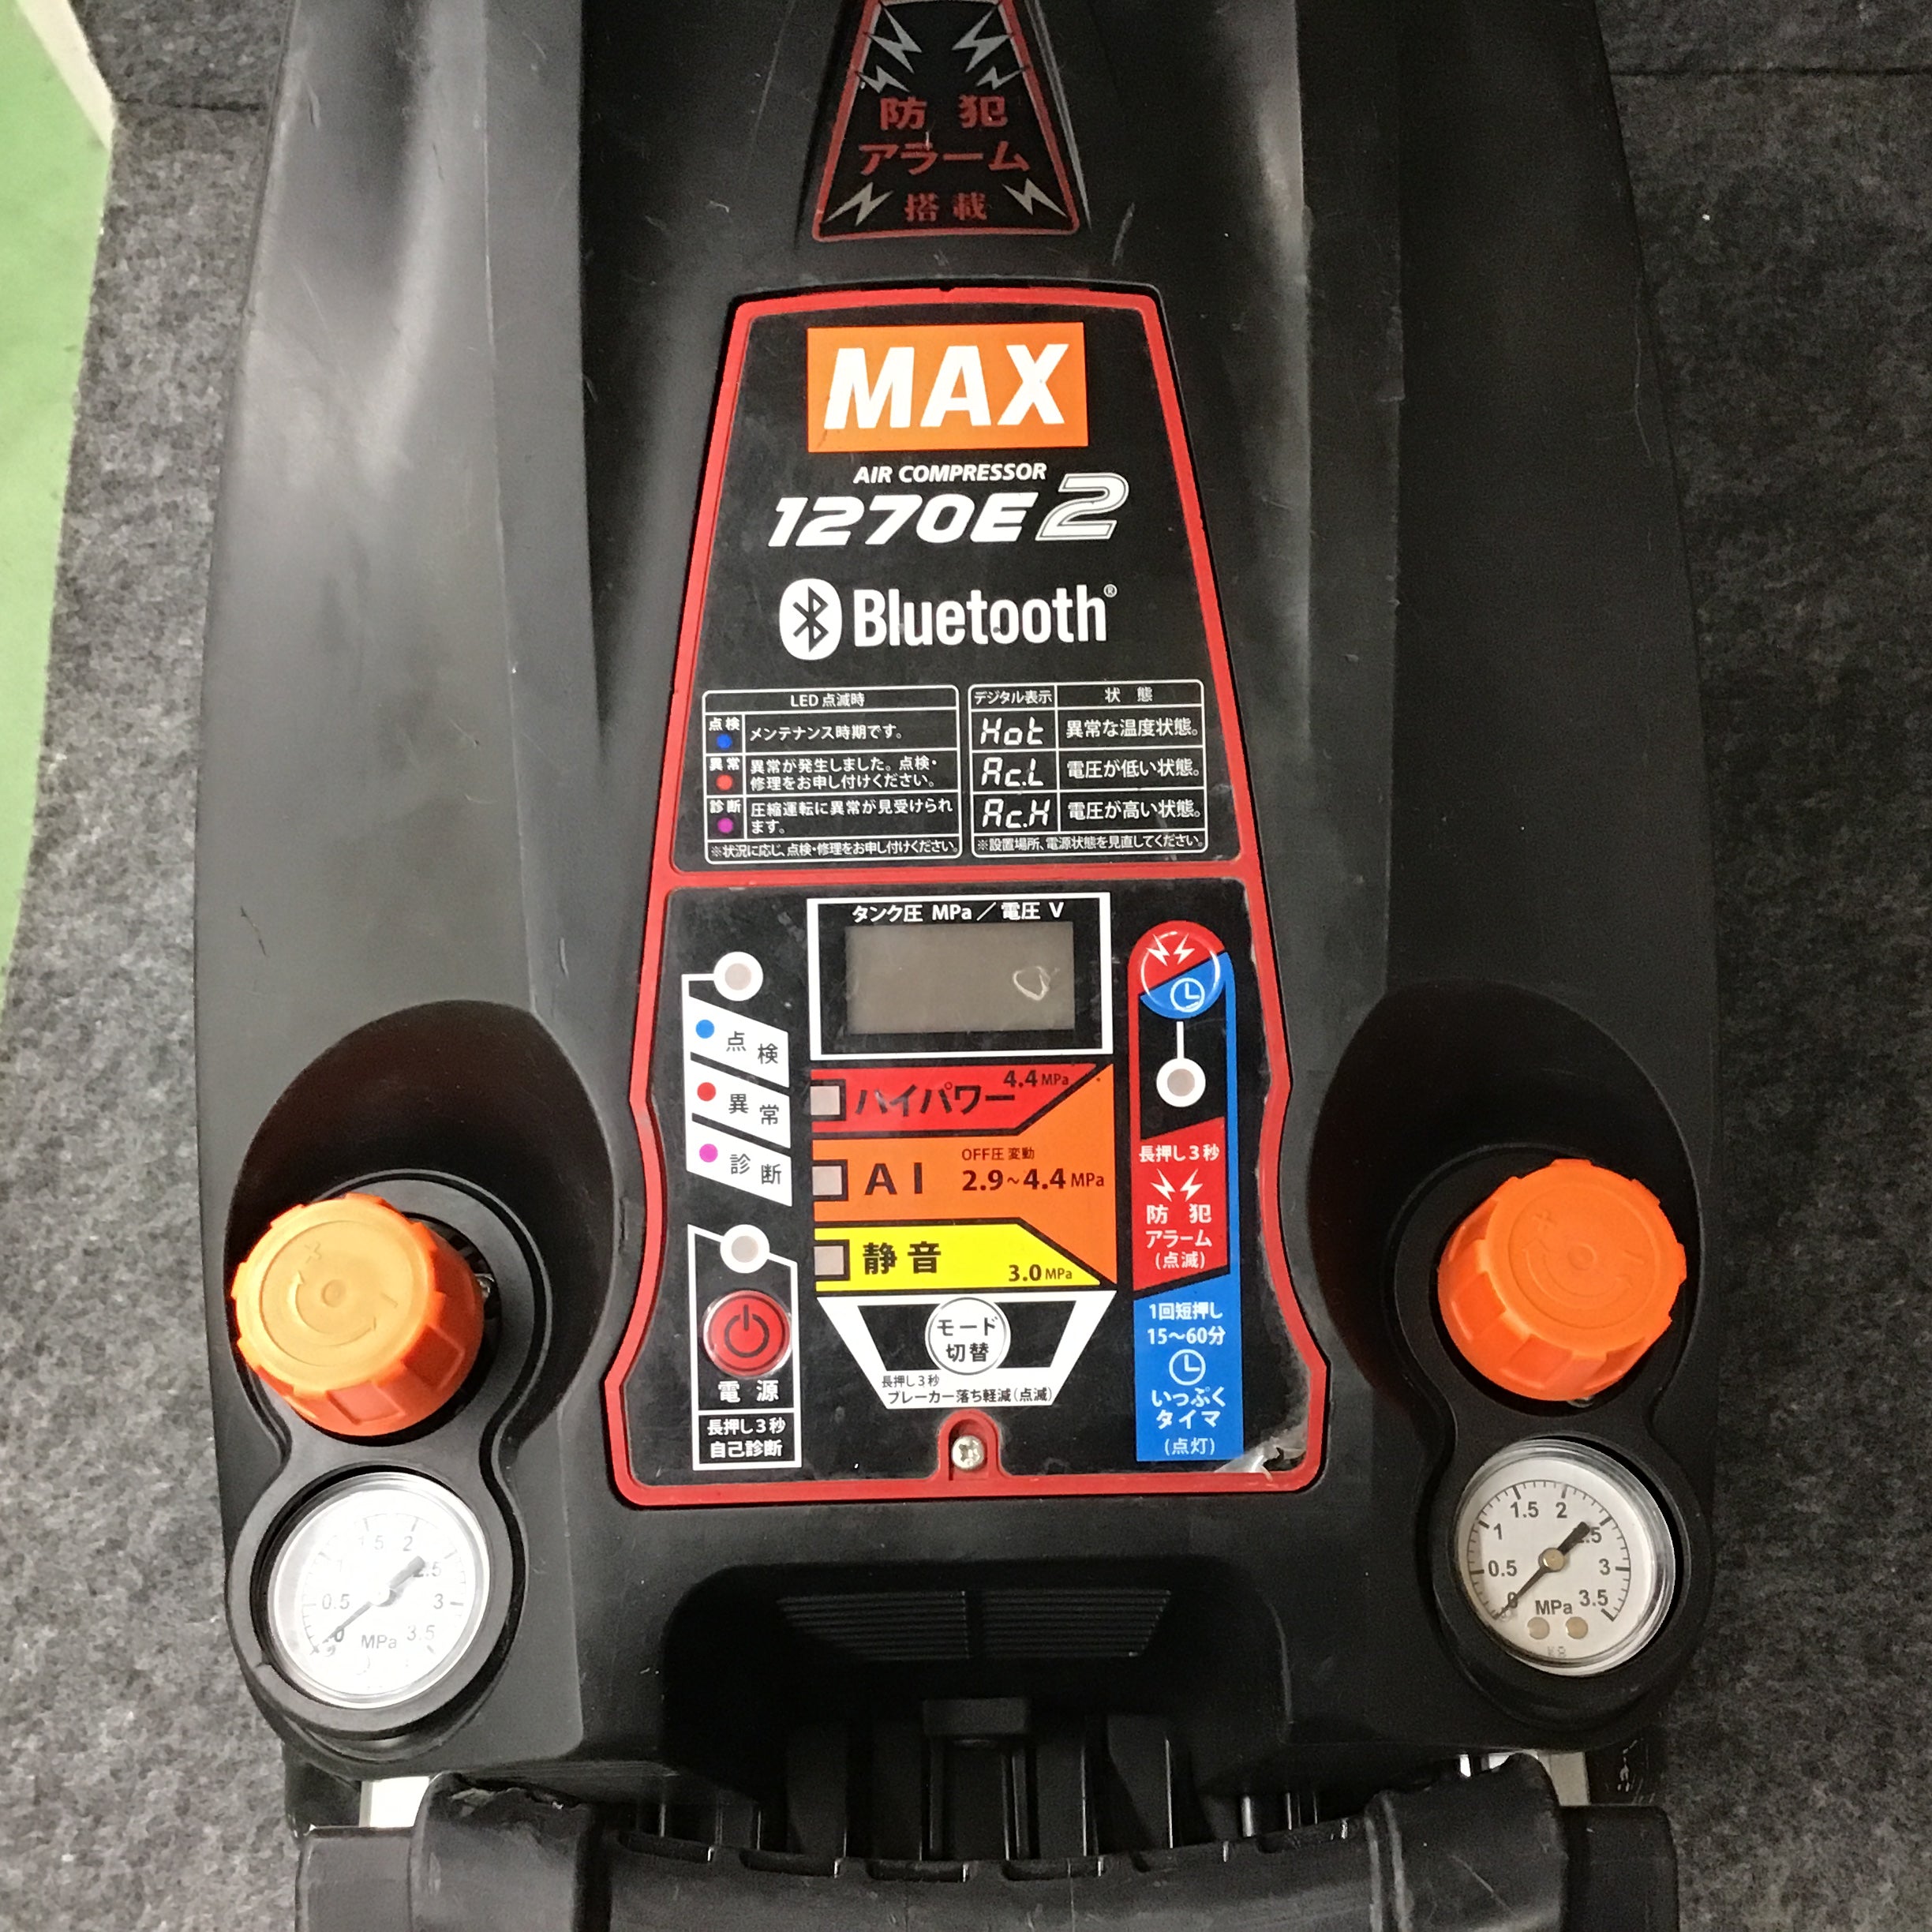 ☆マックス(MAX) 高圧専用エアコンプレッサー AK-HH1270E2 ブラック